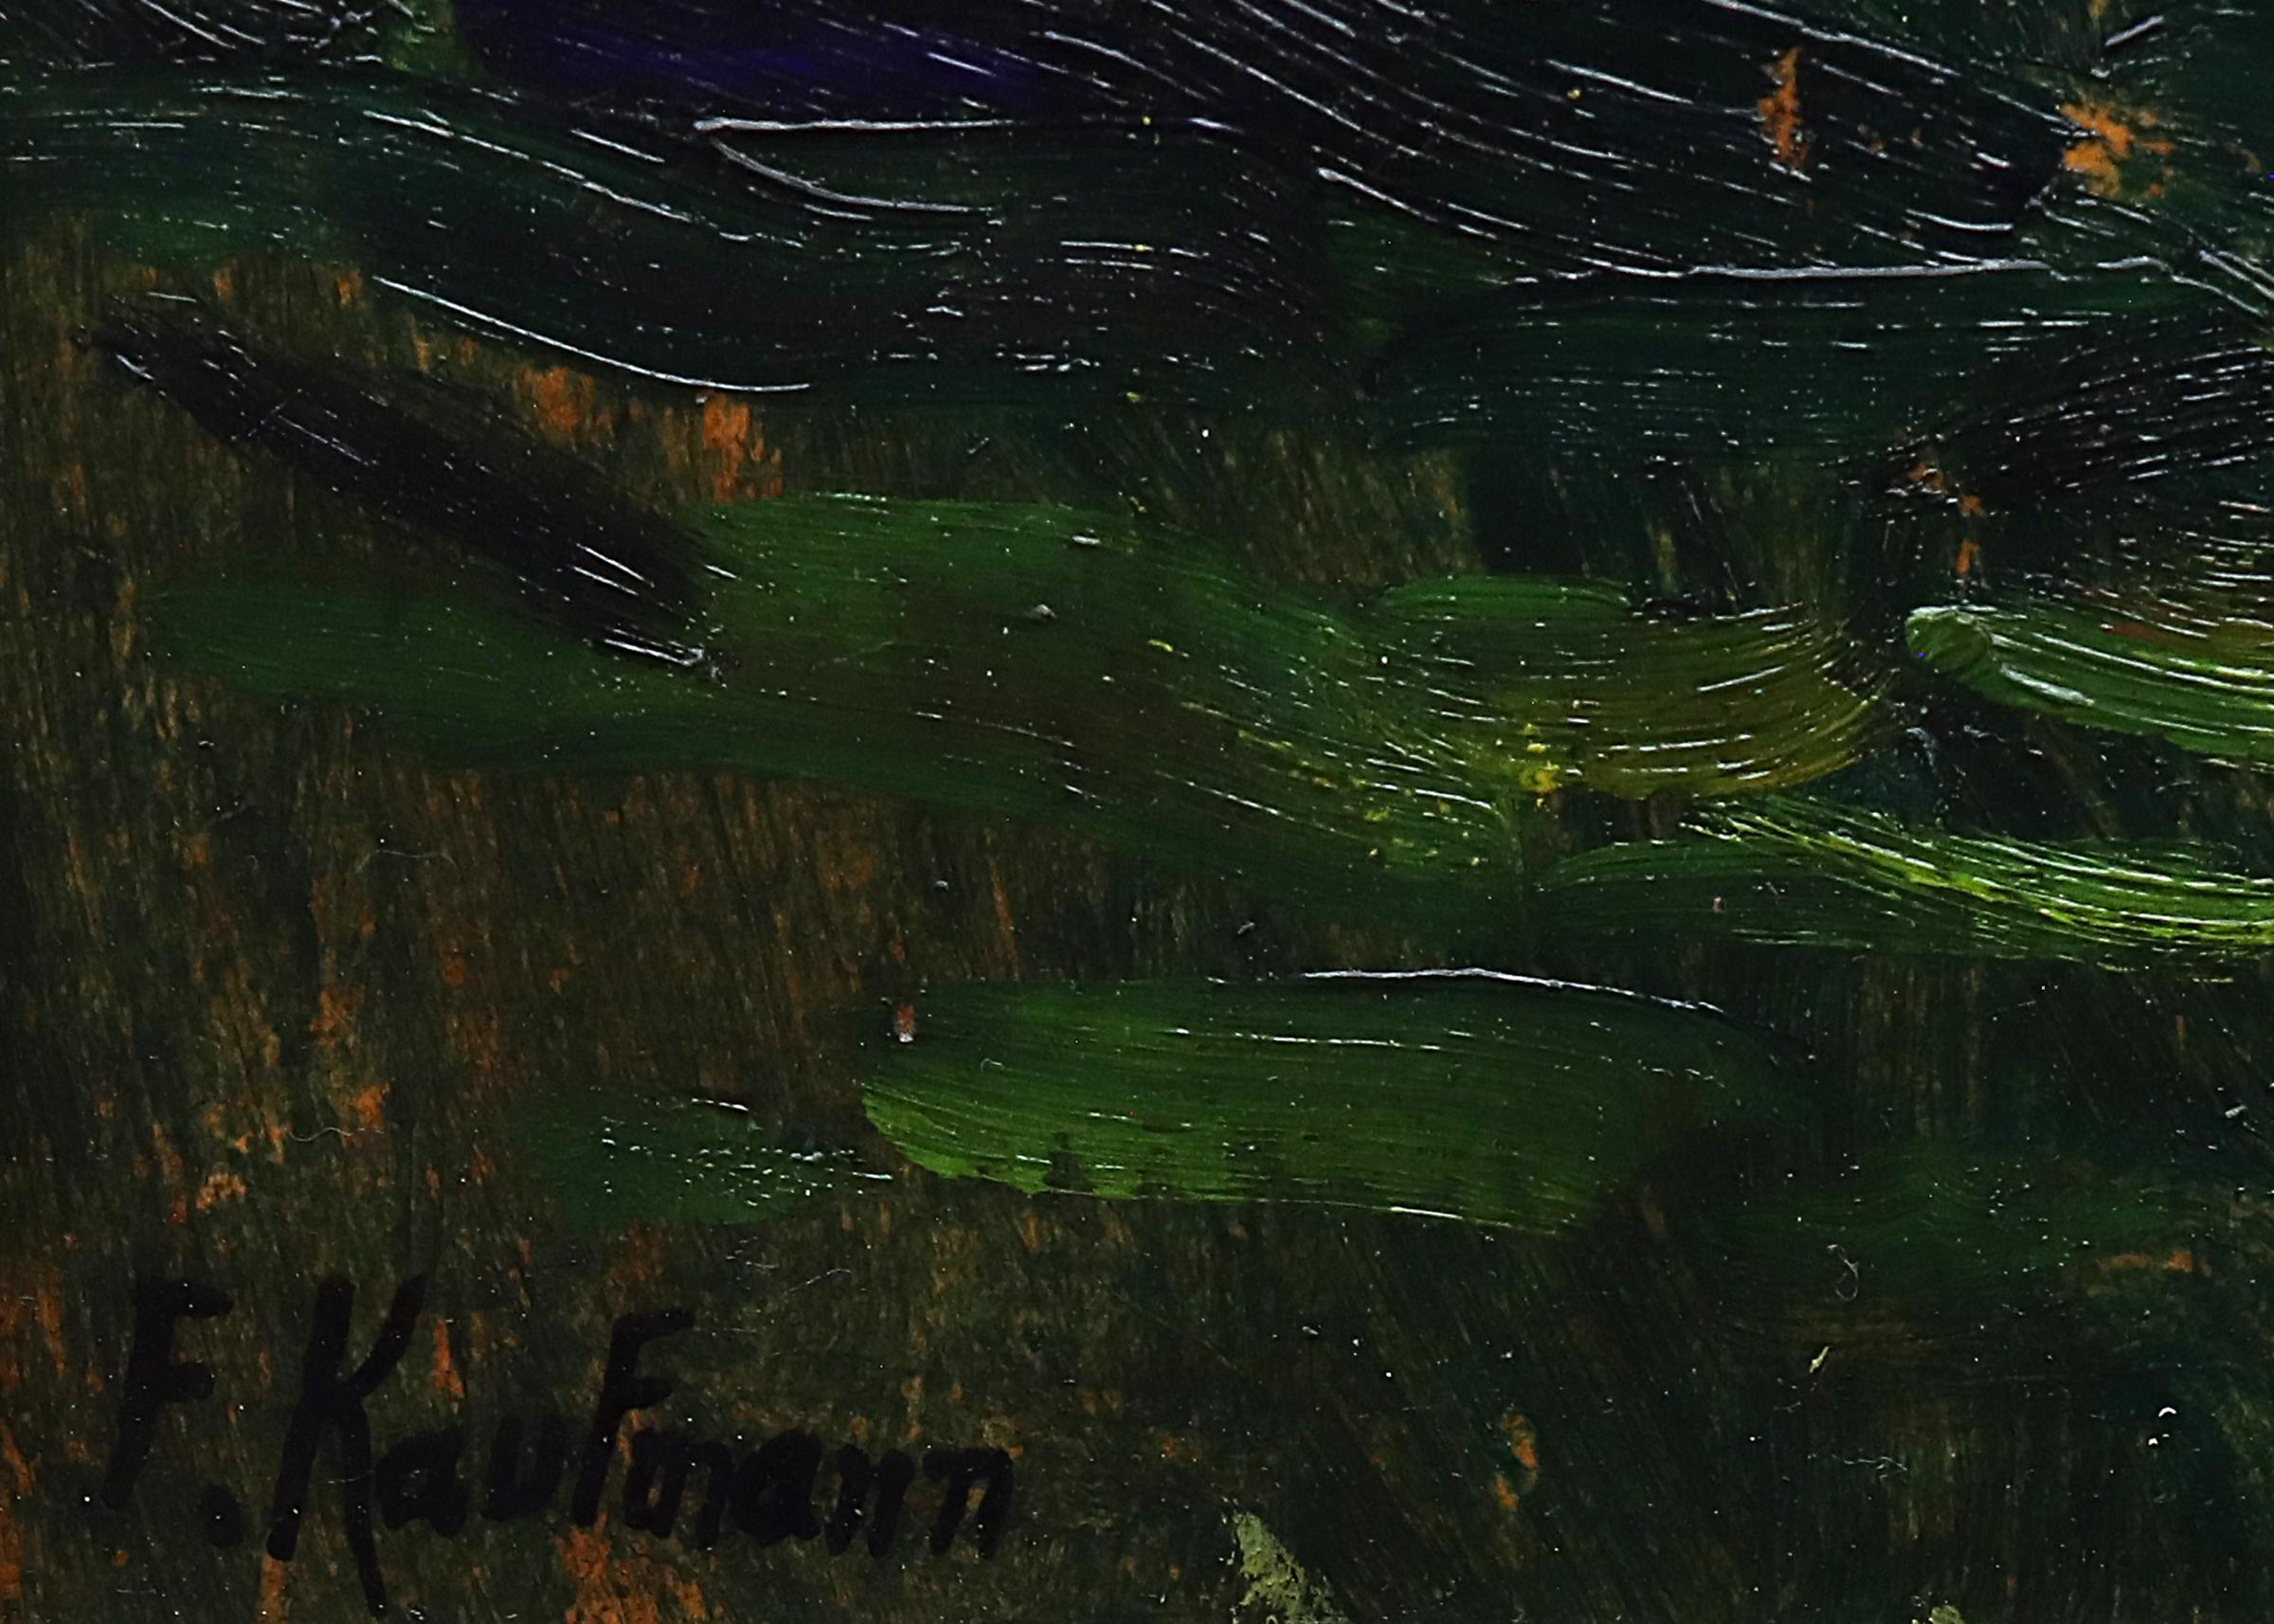 Huile sur toile de Ferdinand Kaufmann. Signé par l'artiste dans le coin inférieur gauche.  Peinture de paysage de montagne, probablement du Colorado ou de la Californie 
 en été, avec une rivière qui coule dans un canyon entouré d'arbres et de